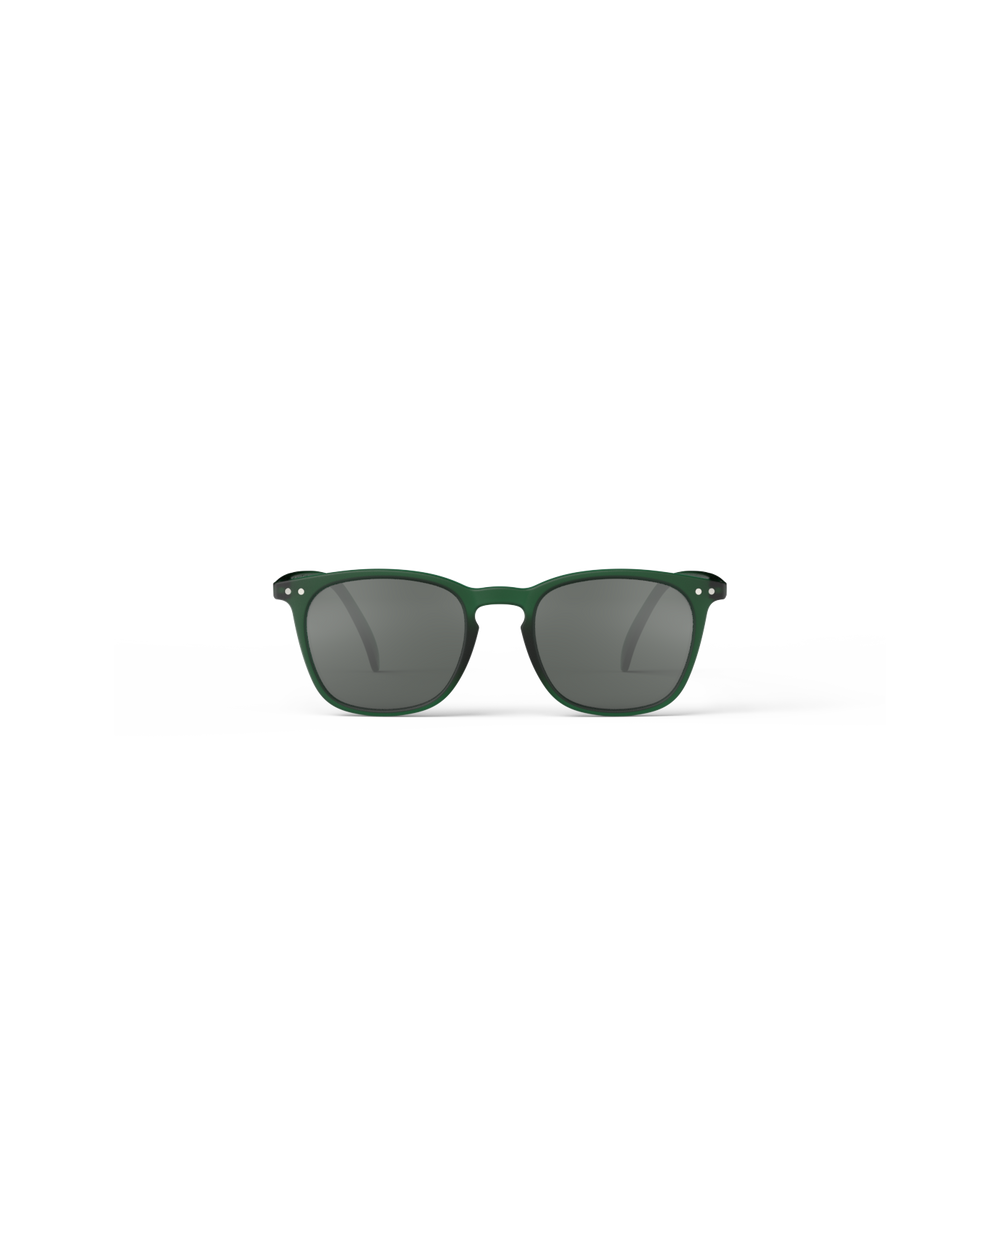 #E Green Sunglasses